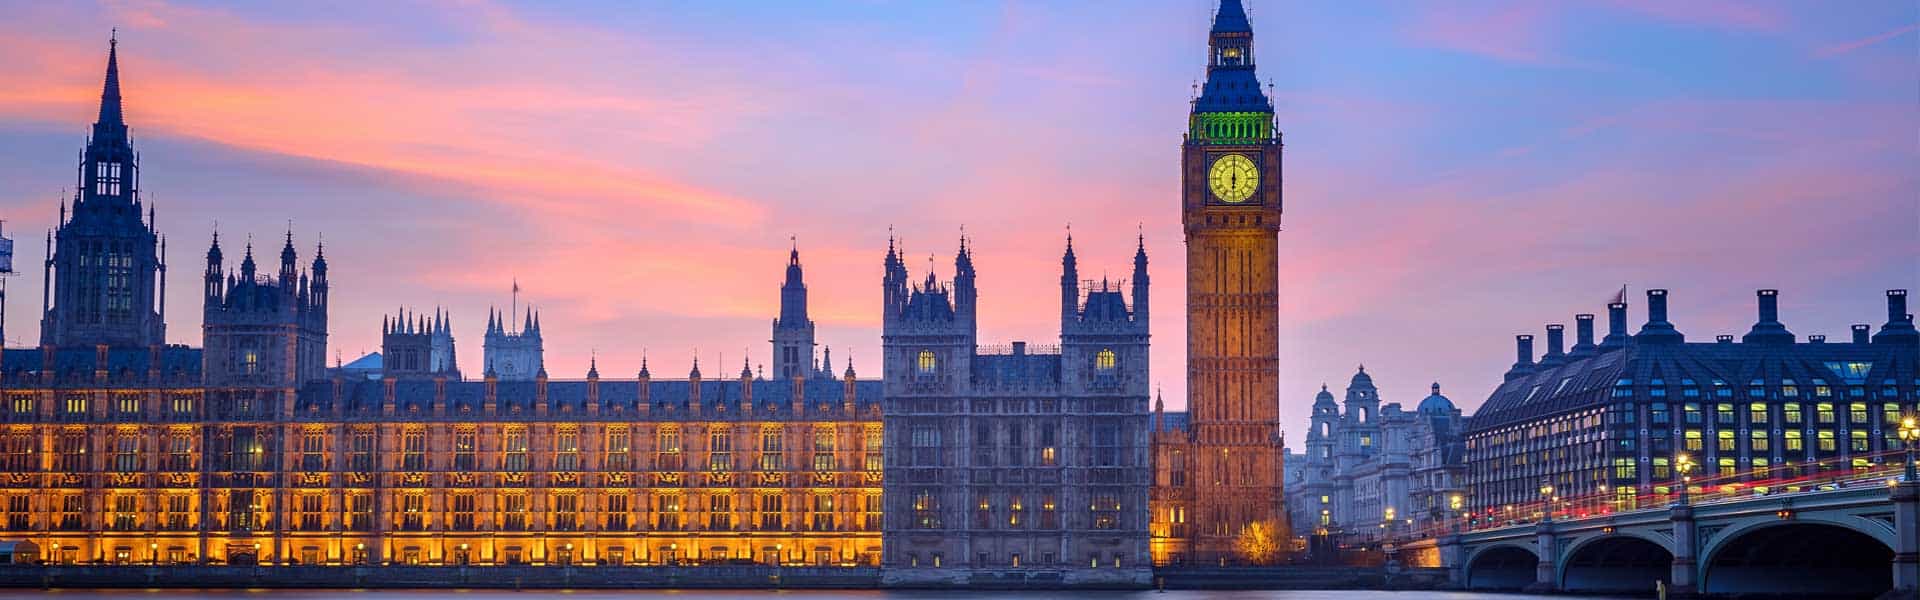 Diesen Glockenschlag kennt jeder: Lauschen Sie den eindrucksvollen Klängen des Big Ben in London, England